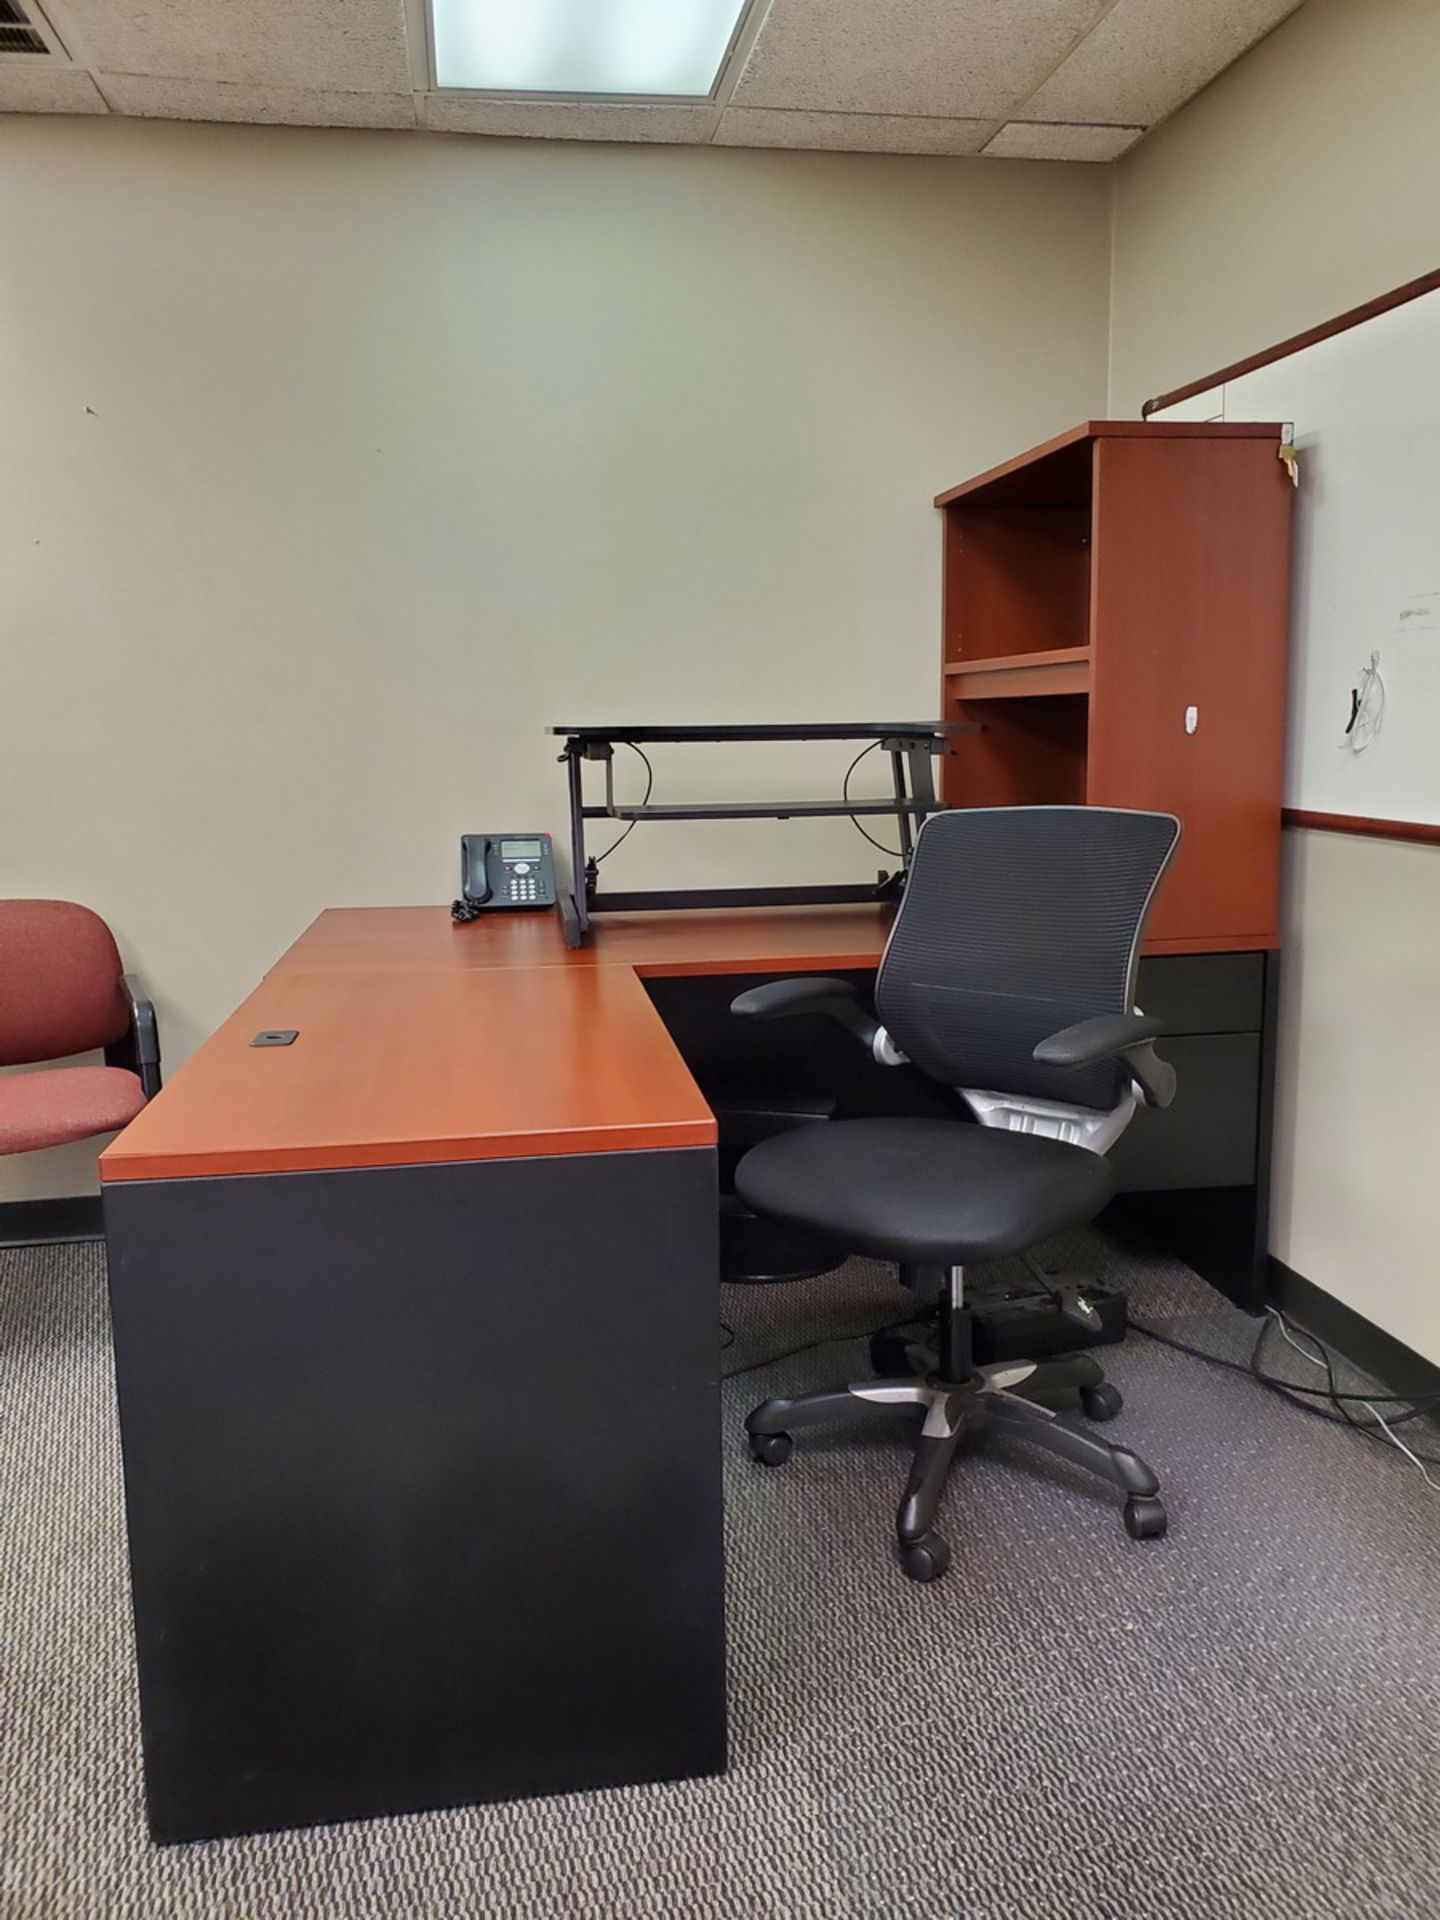 Office Furniture (1) 32" Adjustable Standing Desk; (1) 2-Piece Desk W/ 2-Drawer File Cabinet; (1)